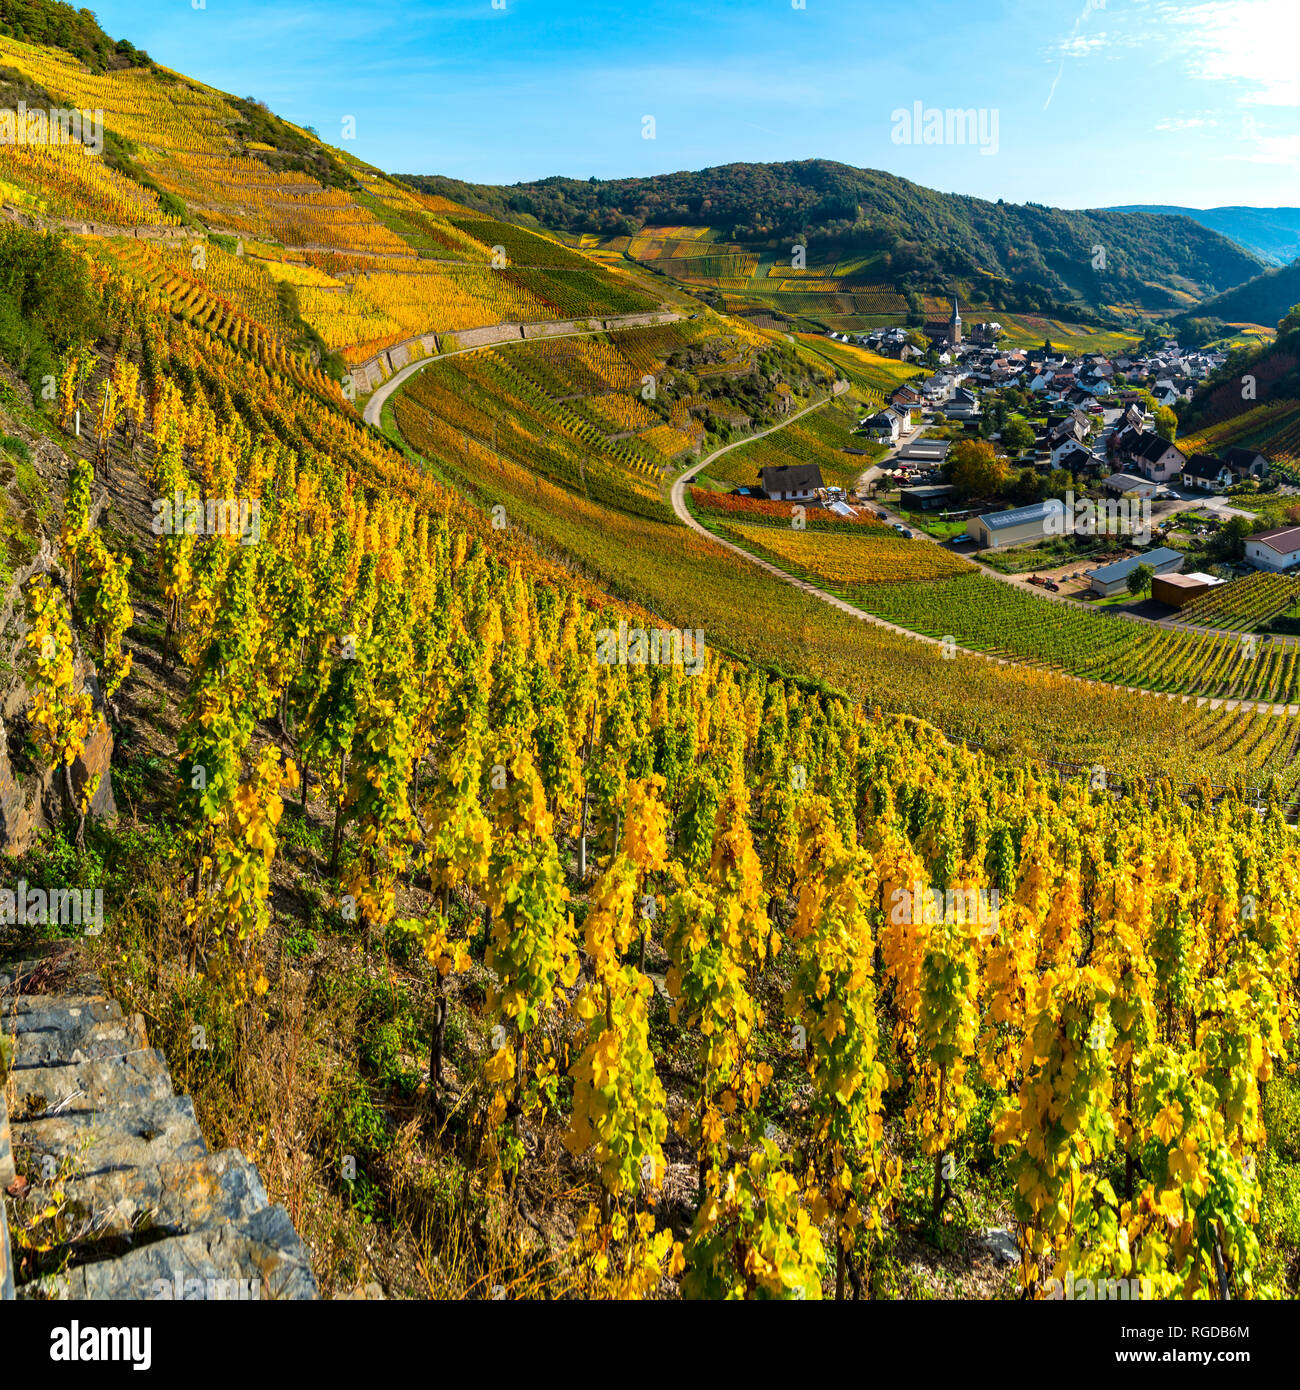 Weinberge im Herbst, Mayschoß, Ahrtal, hier wird Rotwein der Spaetburgunder und Portugieser Traube angebaut, Rotweinanbaugebiet, Eifel, Rheinland-Pfal Foto Stock